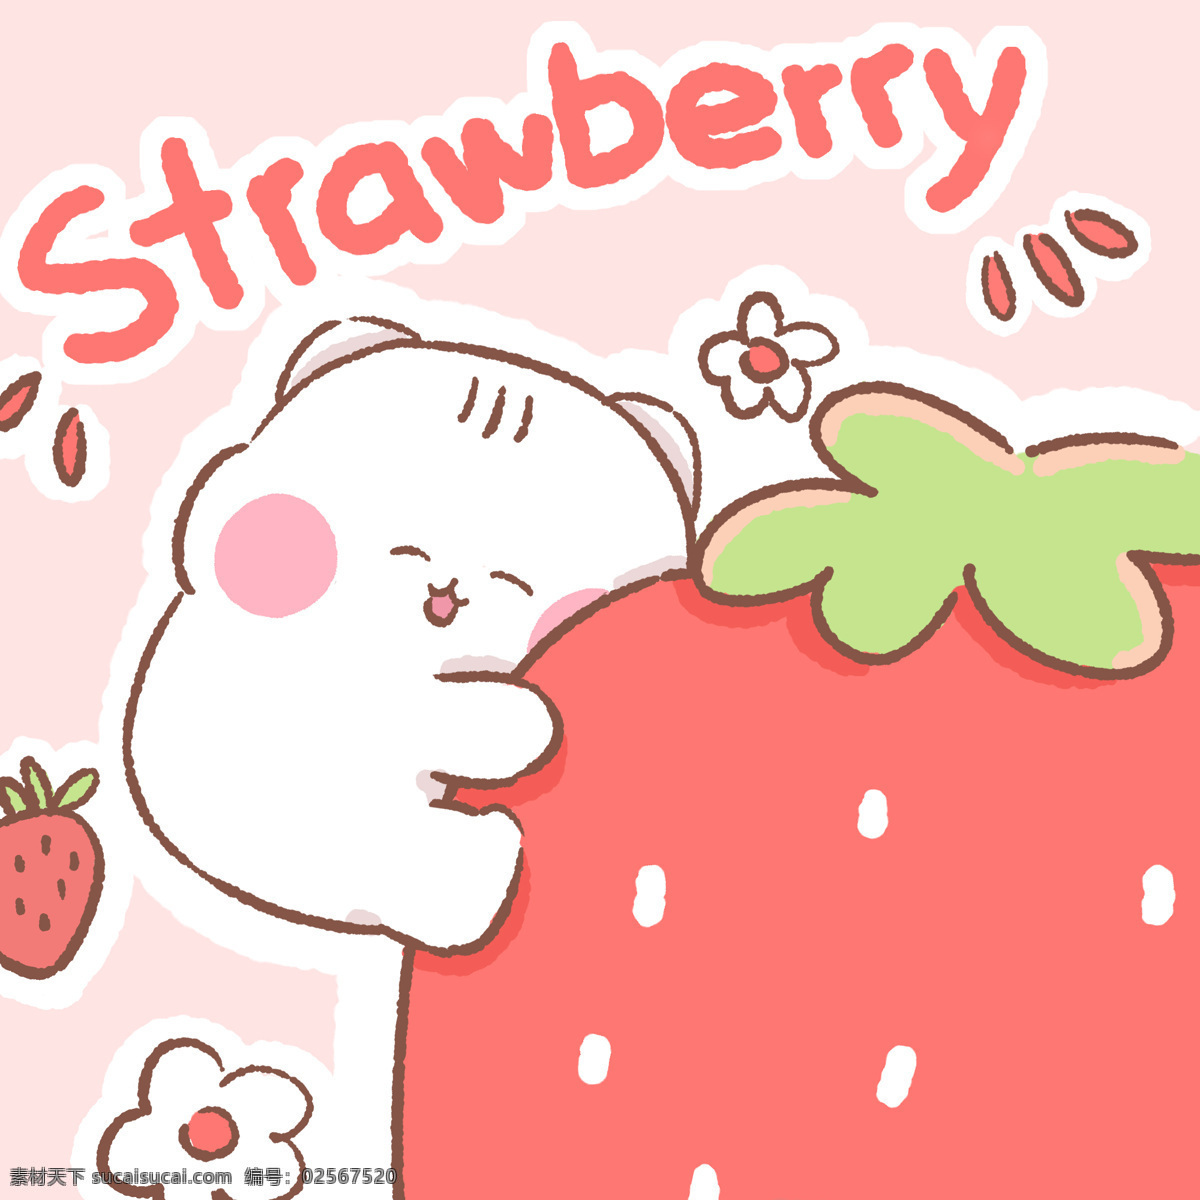 草莓猫 插画 卡通 ip 猫 头像 可爱 草莓 水果 甜品 零食 美食 动漫动画 动漫人物